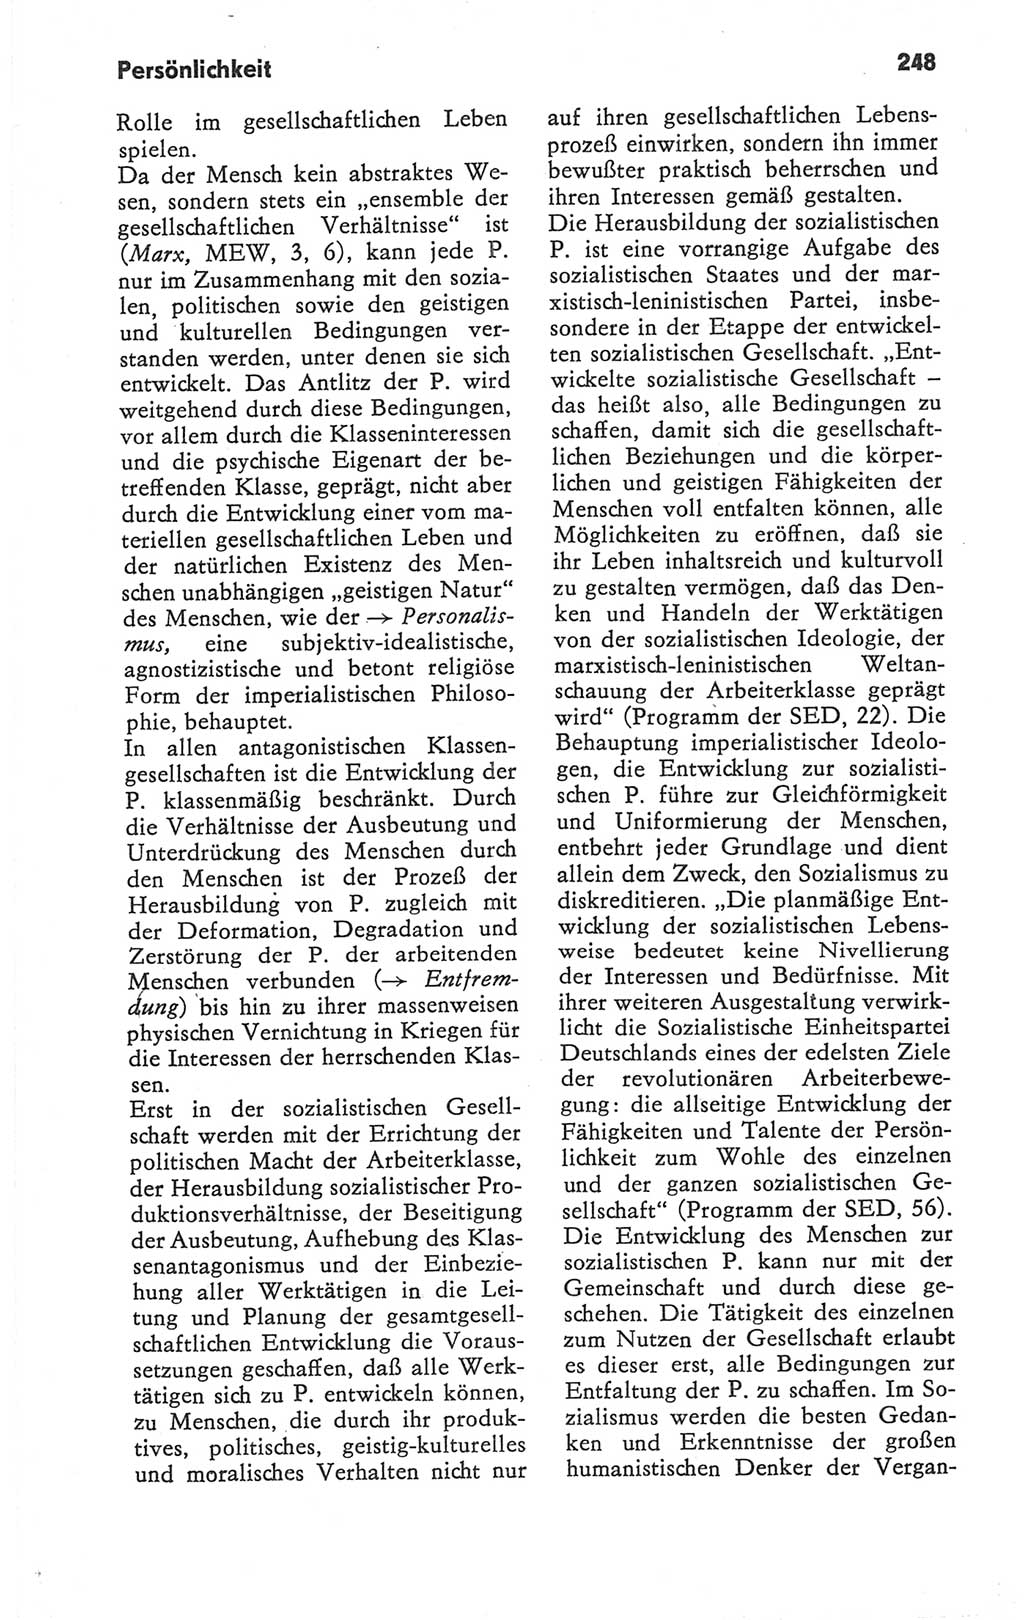 Kleines Wörterbuch der marxistisch-leninistischen Philosophie [Deutsche Demokratische Republik (DDR)] 1979, Seite 248 (Kl. Wb. ML Phil. DDR 1979, S. 248)